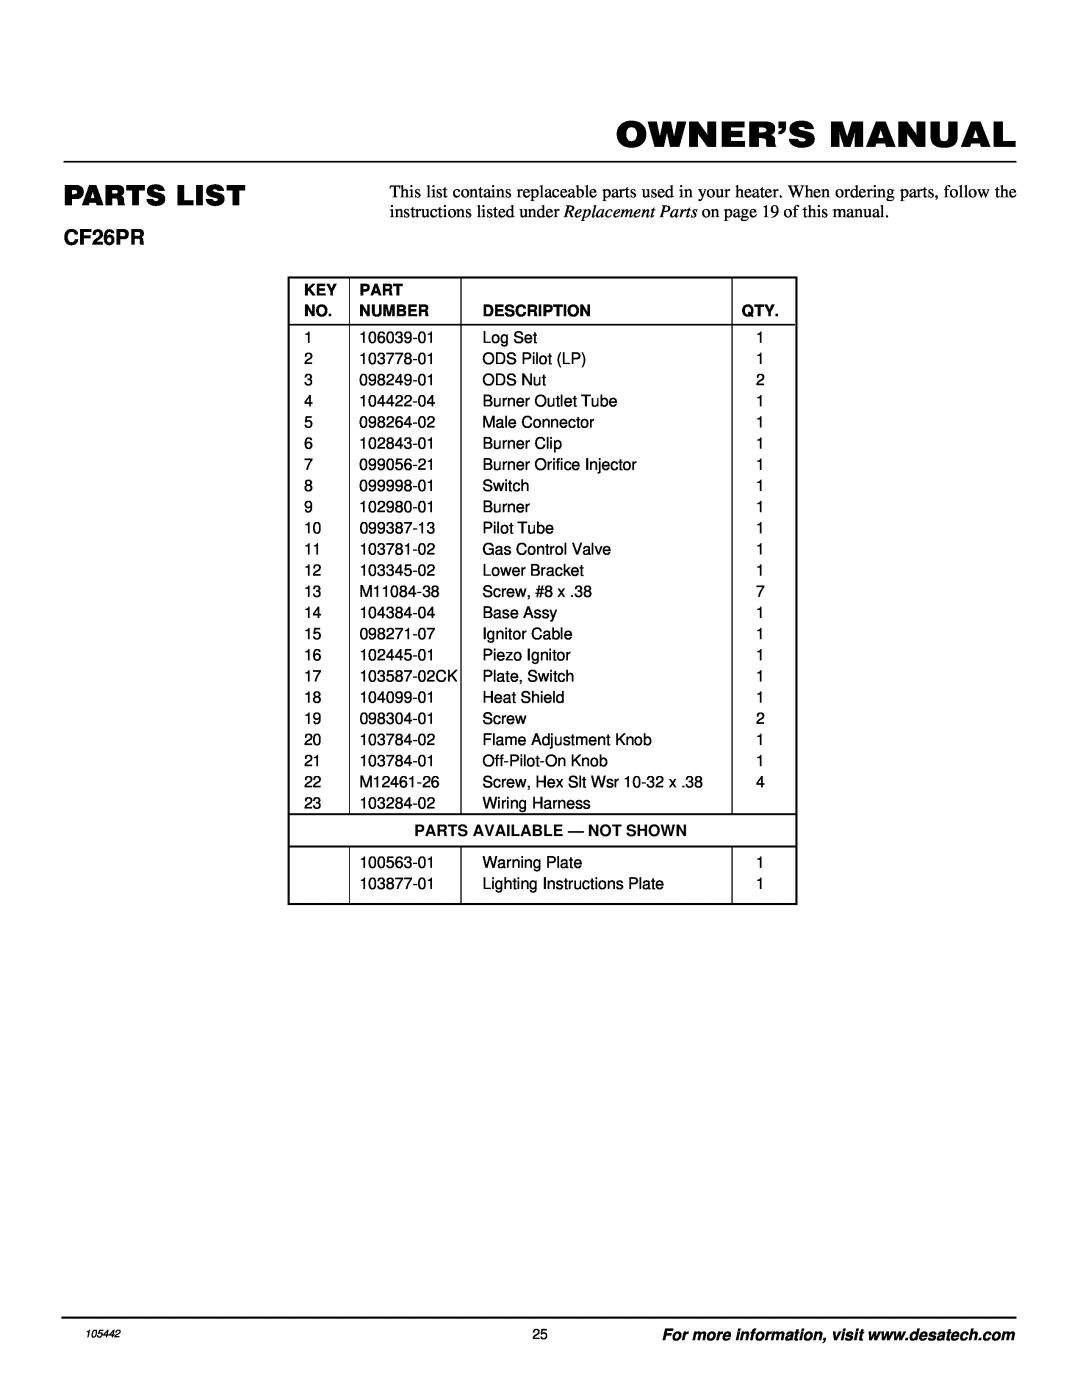 Desa CF26PR installation manual Parts List, Number, Description, Parts Available - Not Shown 